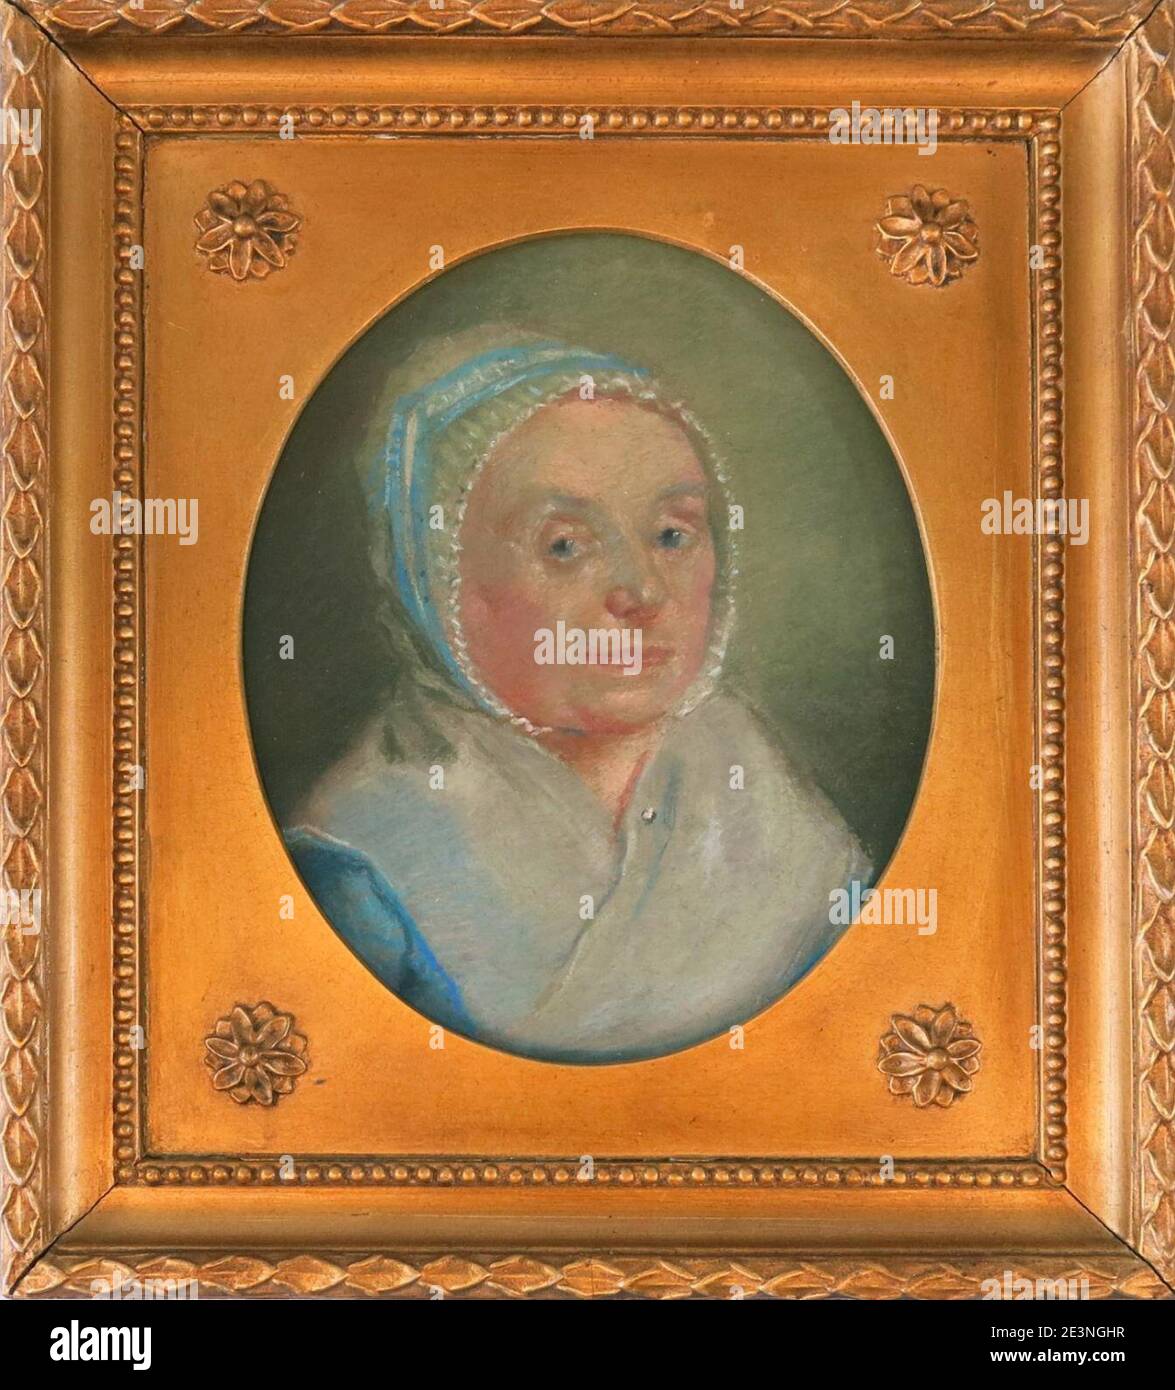 Maria Cornelia Bonebakker-van Oosterhoudt (1734-1820), echtgenote van Anthonij Bonebakker, objectnr 4712. Stock Photo